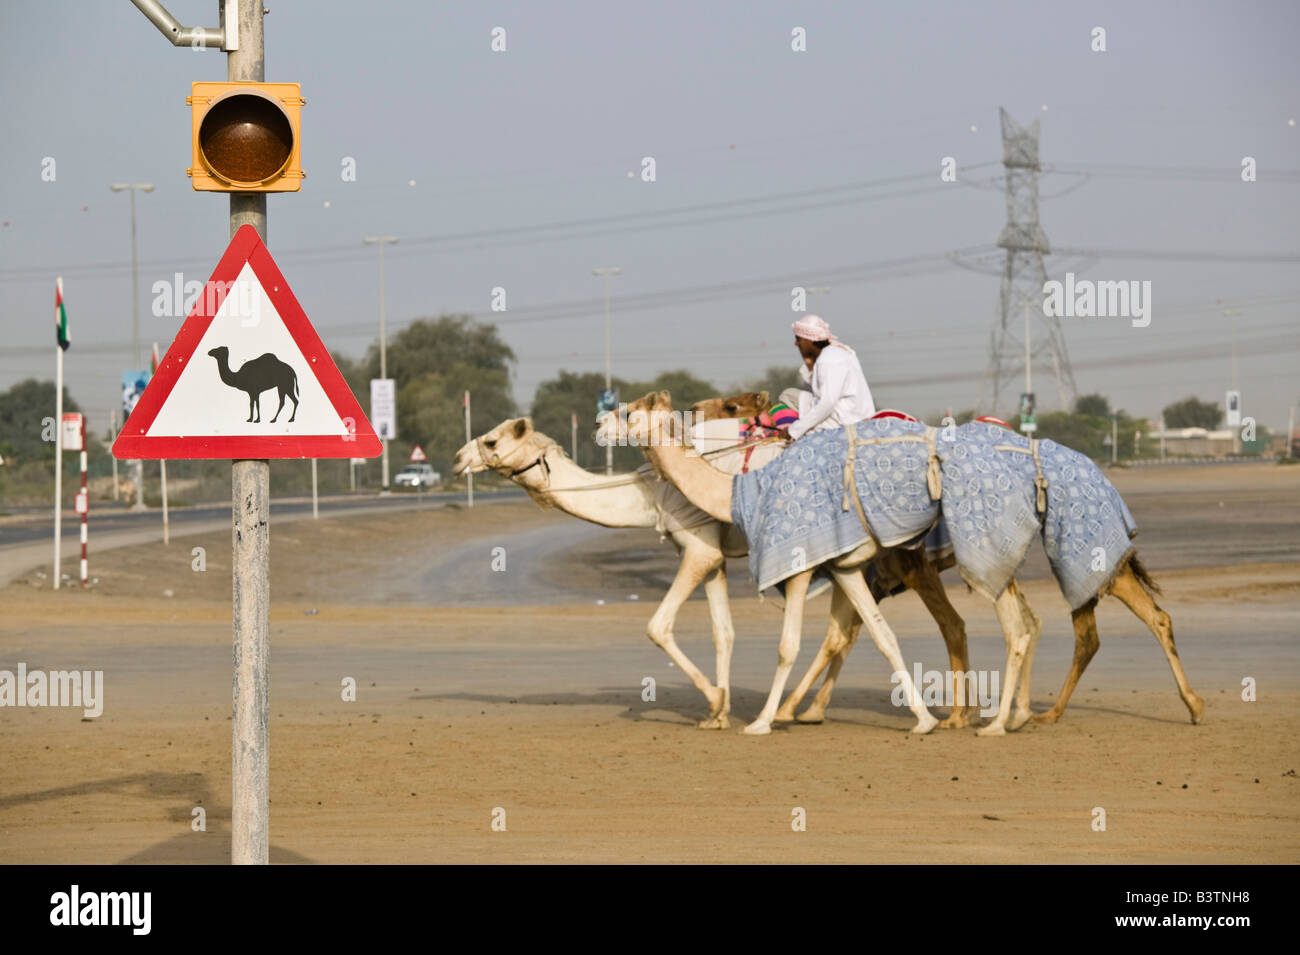 Vereinigte Arabische Emirate, Dubai, Al Marqadh. Dubai-Kamelrennen Track - Kamel durchqueren Zeichen Stockfoto